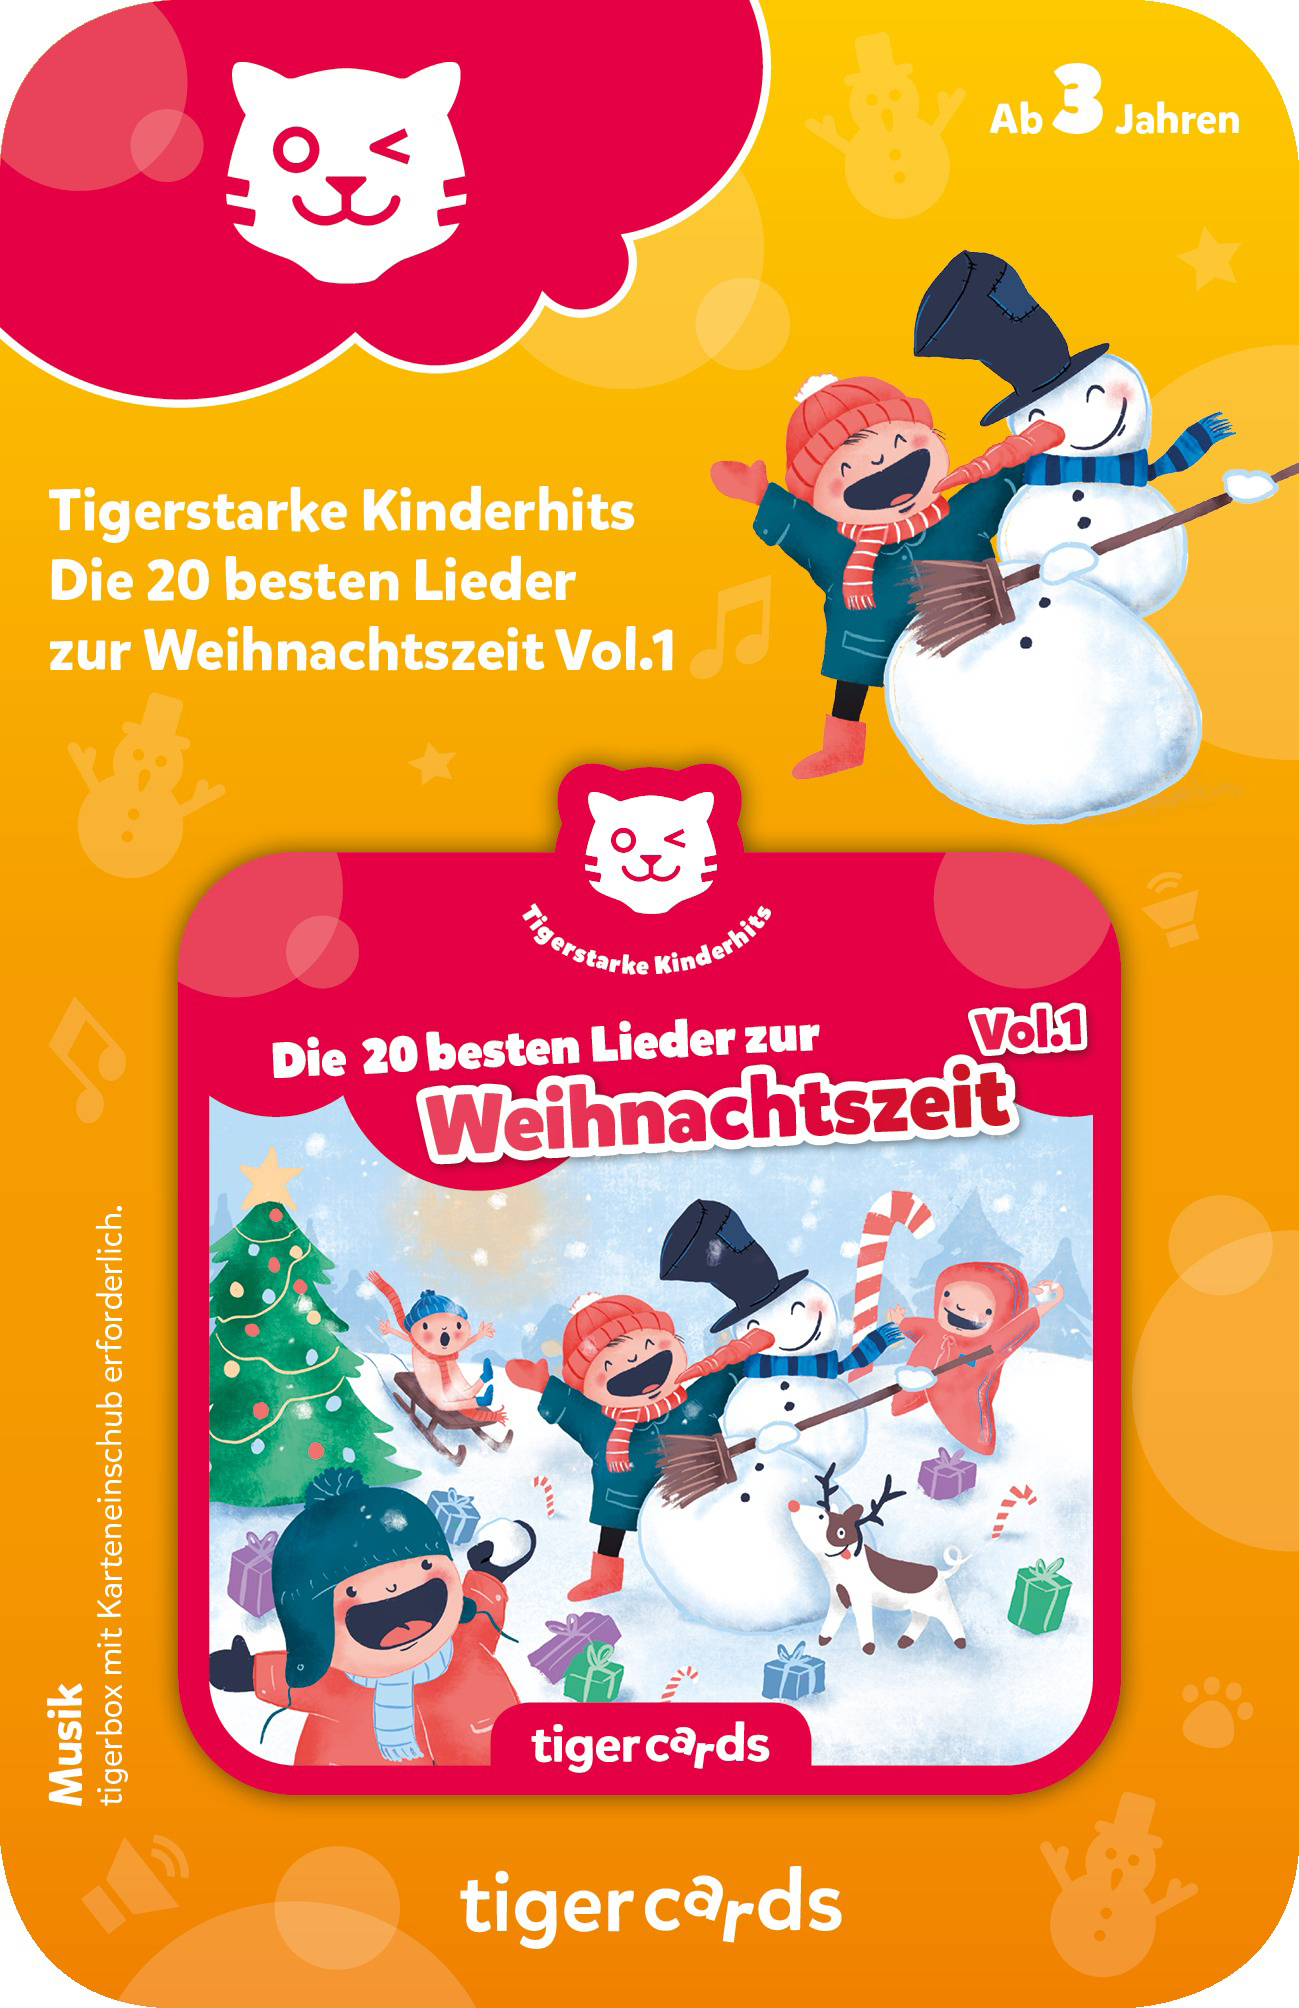 Mehrfarbig TIGERMEDIA - Die Kinderhits 20 besten Tigercard, zur - Tigercard Tigerstarke Vol.1 Weihnachtszeit Lieder